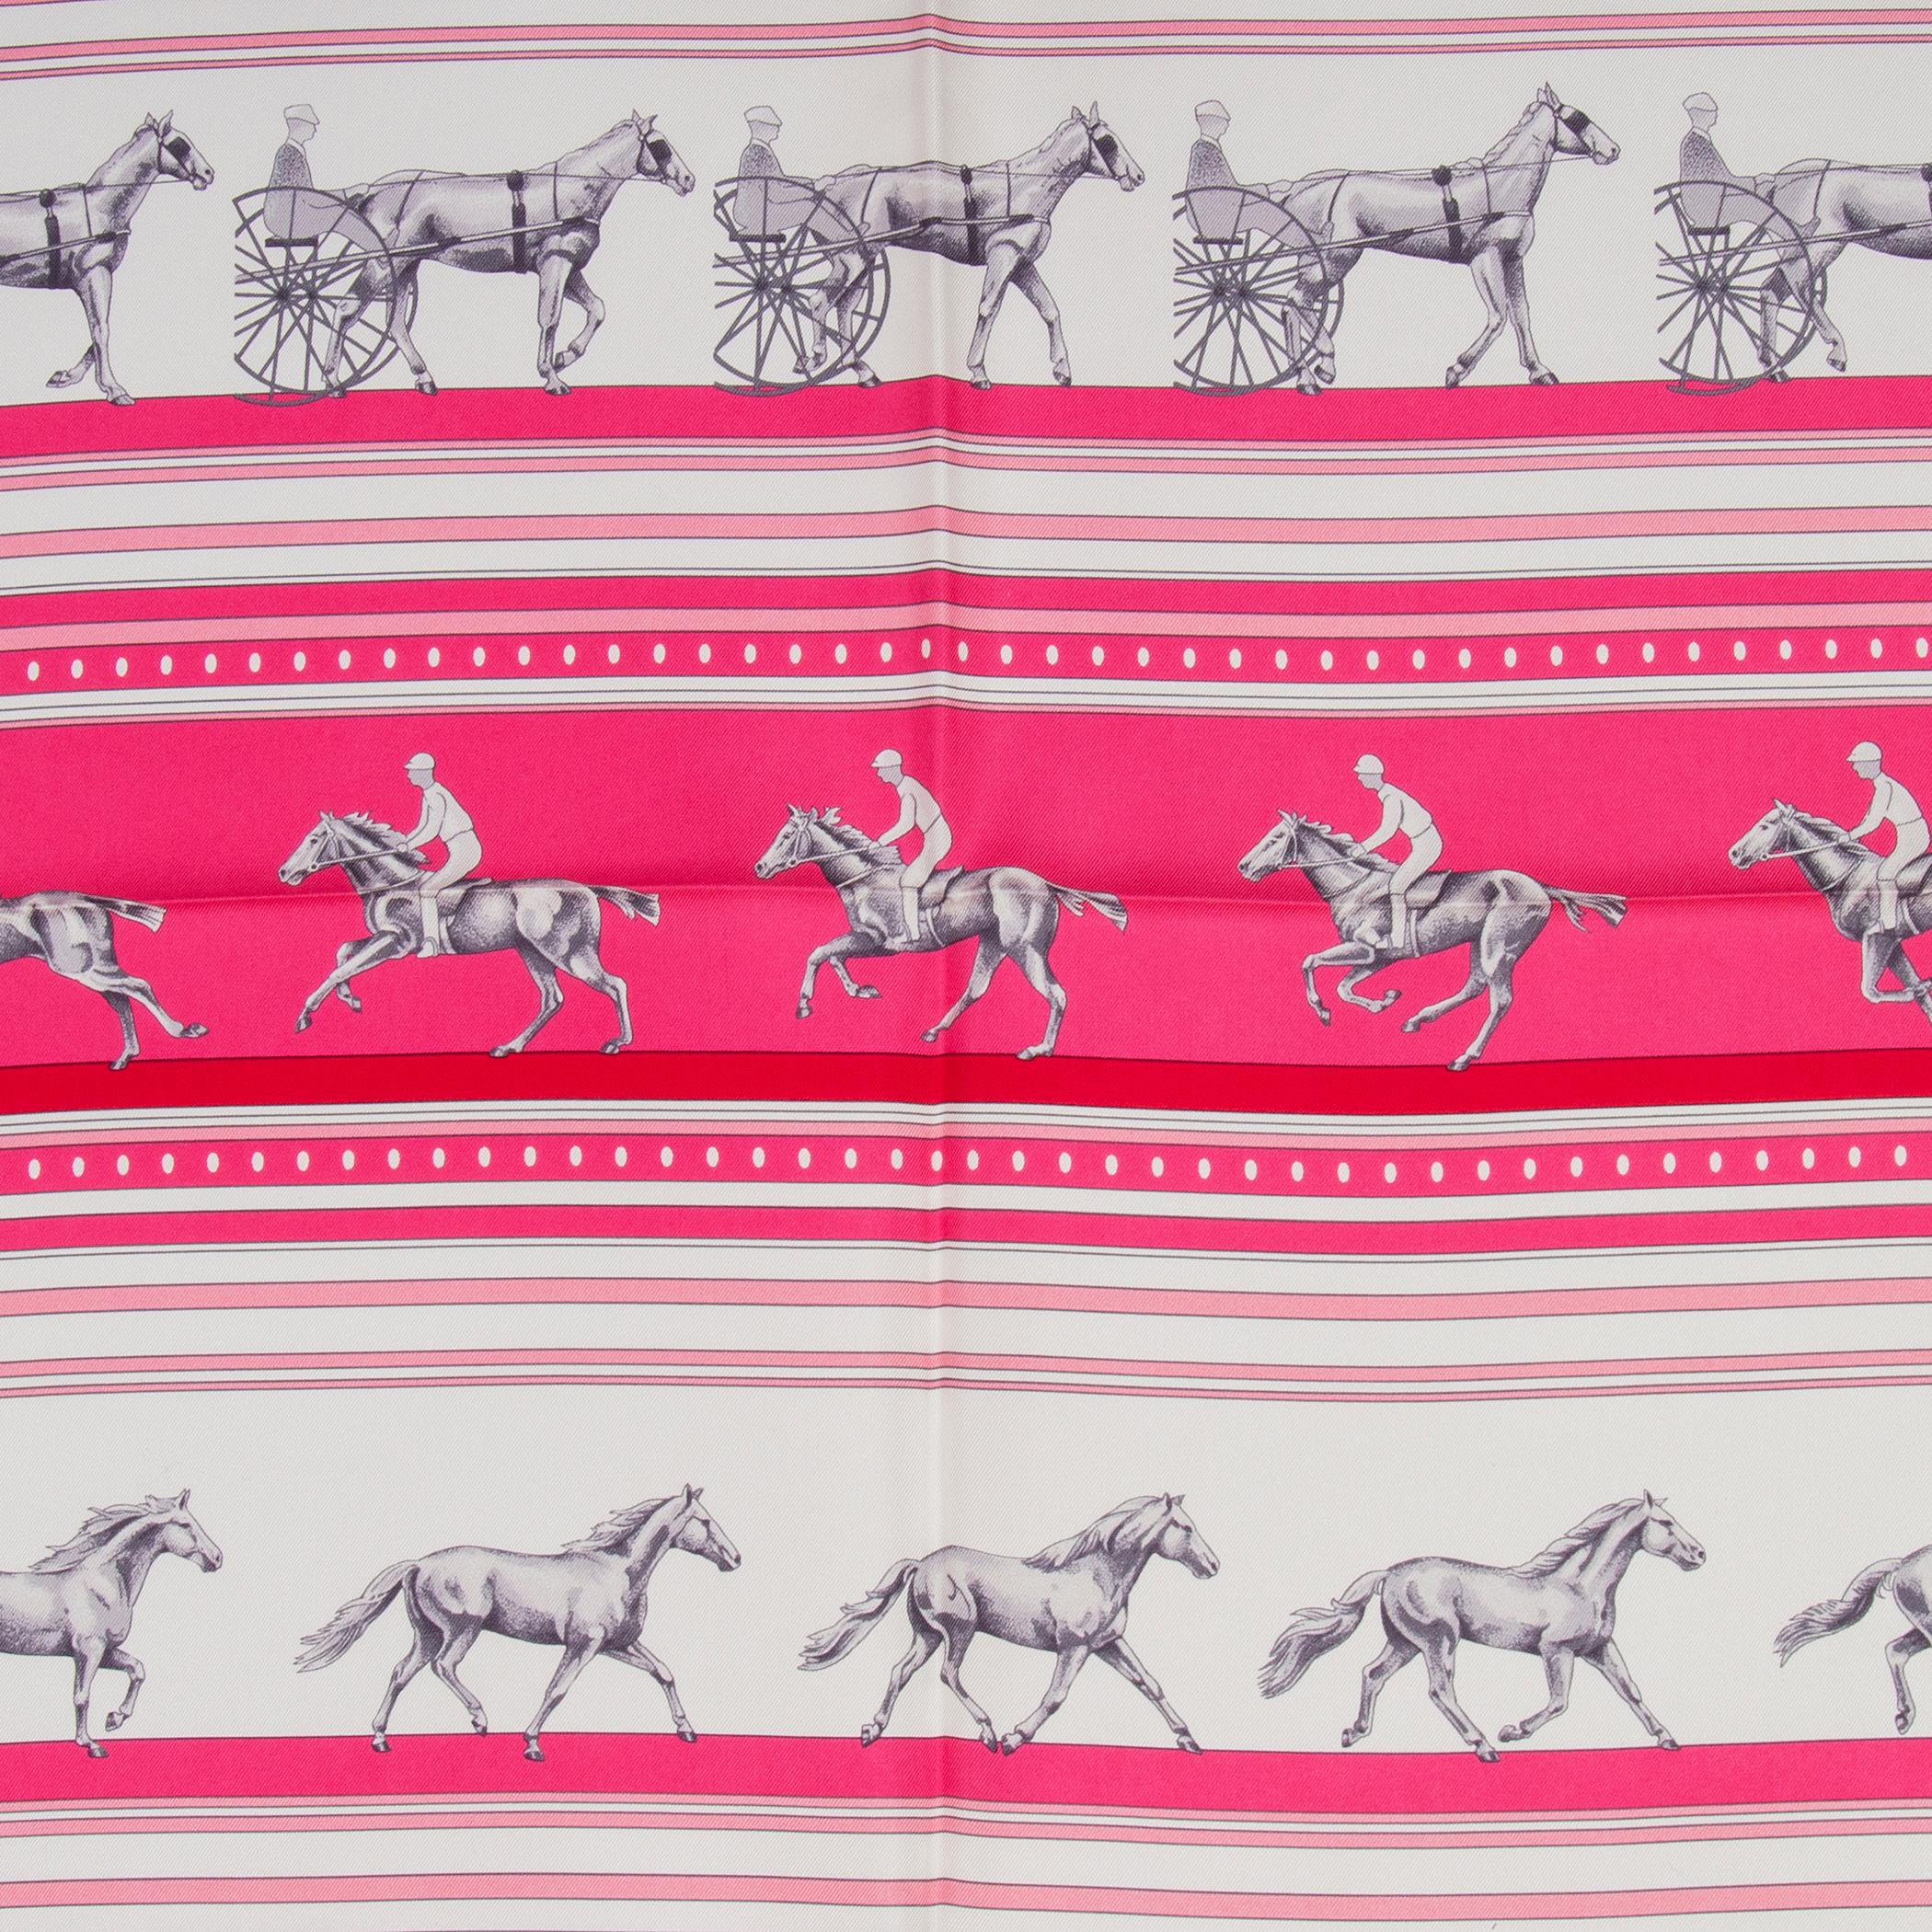 Hermès 'Sequences' Schal in limitierter Auflage aus rosa, roter und cremefarbener Seide (100%). Brandneu.

Breite 90cm (35.1in)
Höhe 90cm (35.1in)